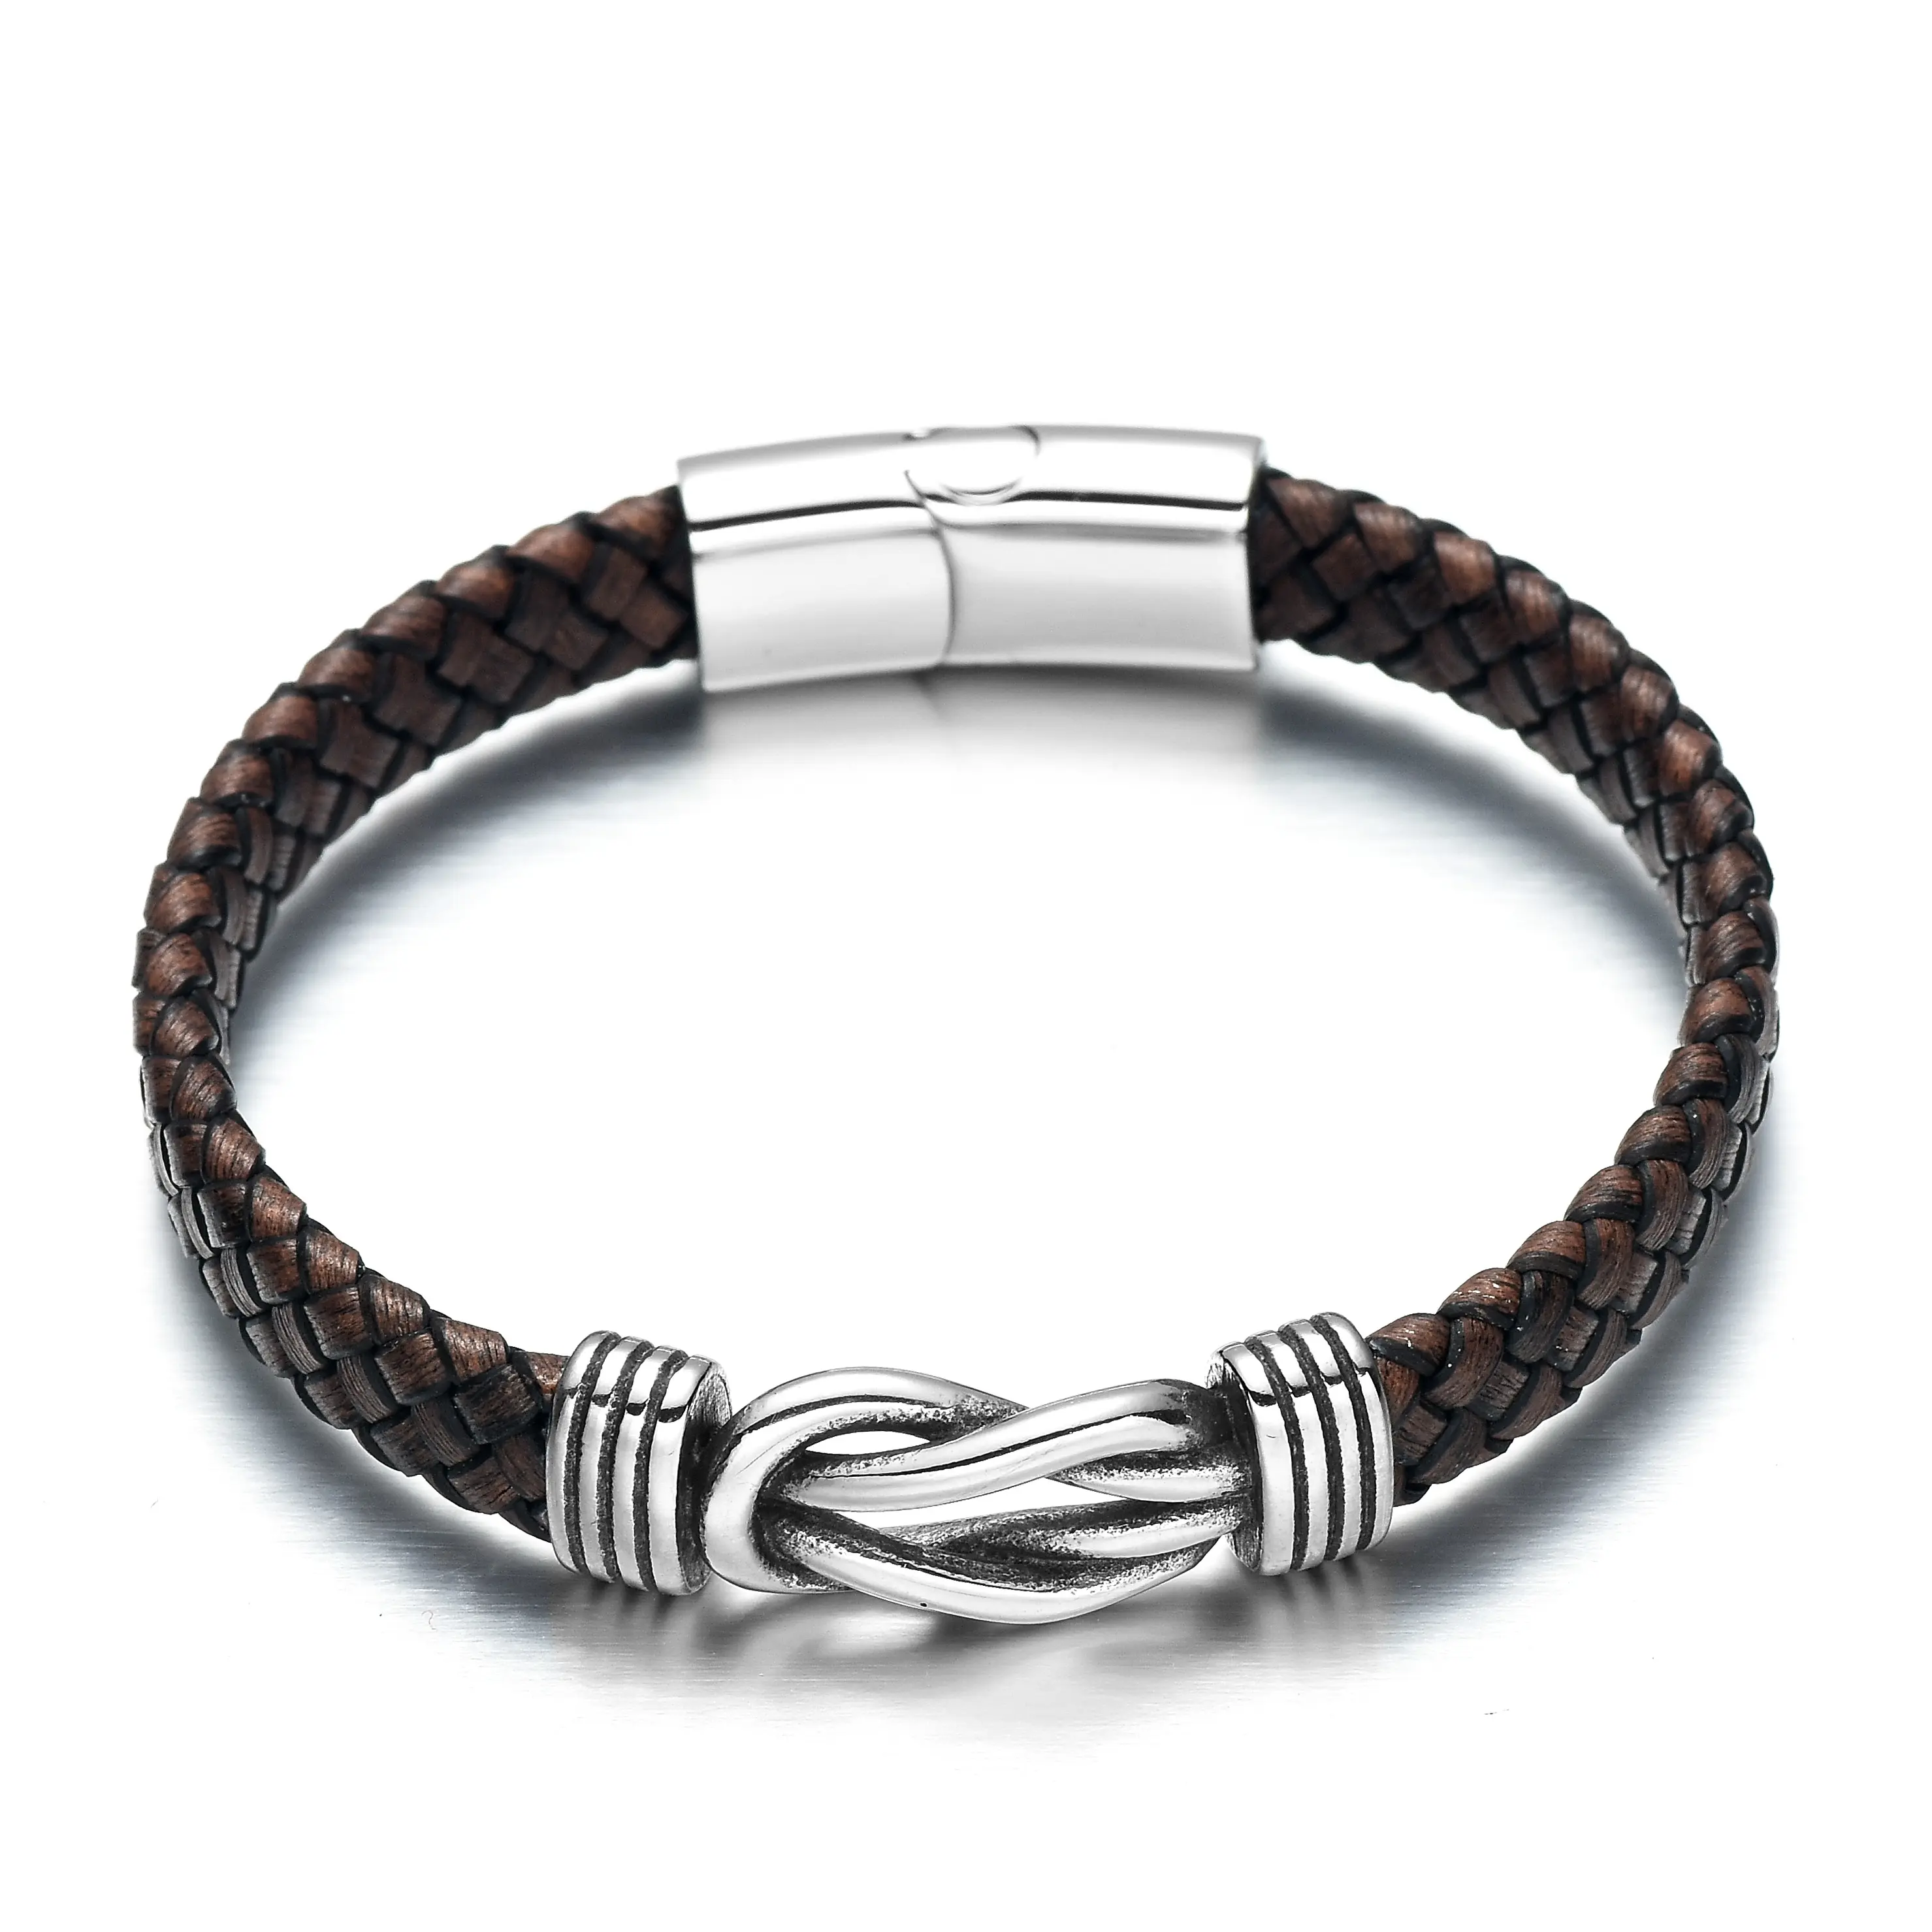 REAMOR 2020 Men Knot Bracelet European Braided Leather Bracelet 316L Stainless Steel Magnetic Buckle BraceletためMenとWomen